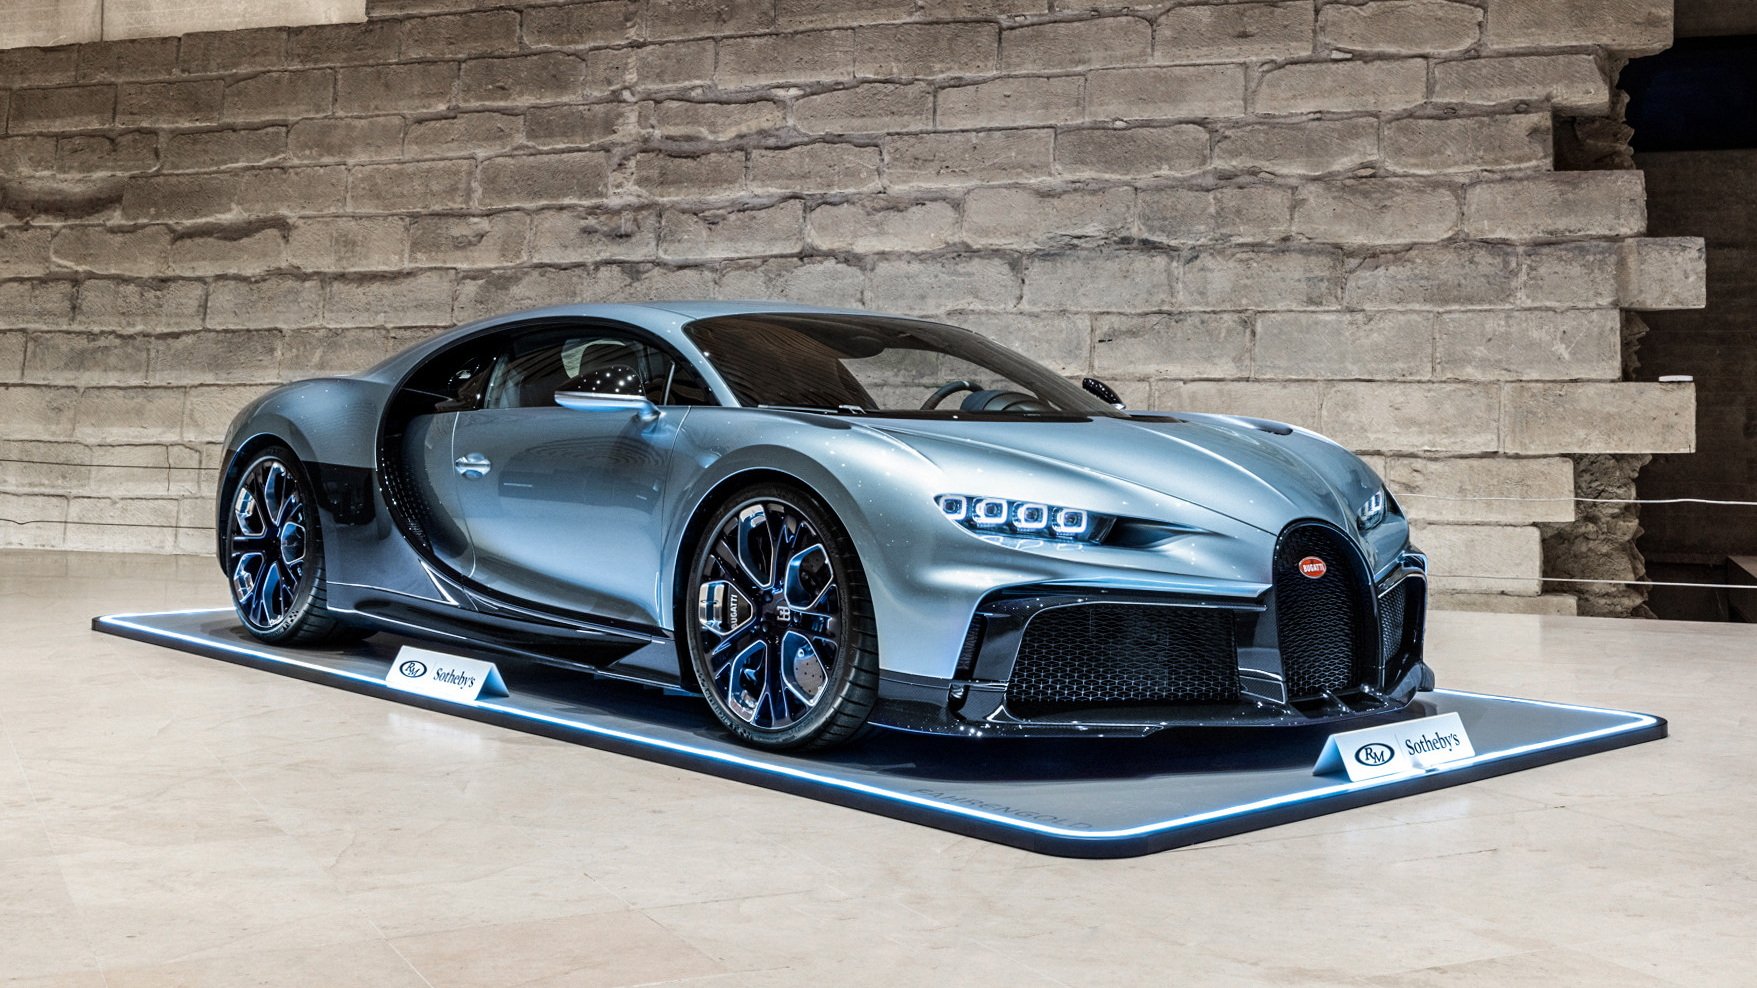 ประมูลเสร็จสิ้น!! Bugatti Chiron Profilée ราคา 9.7 ล้านยูโร ขึ้นแท่นรถใหม่มูลค่าสูงสุดเท่าที่เคยมีมาในการประมูล